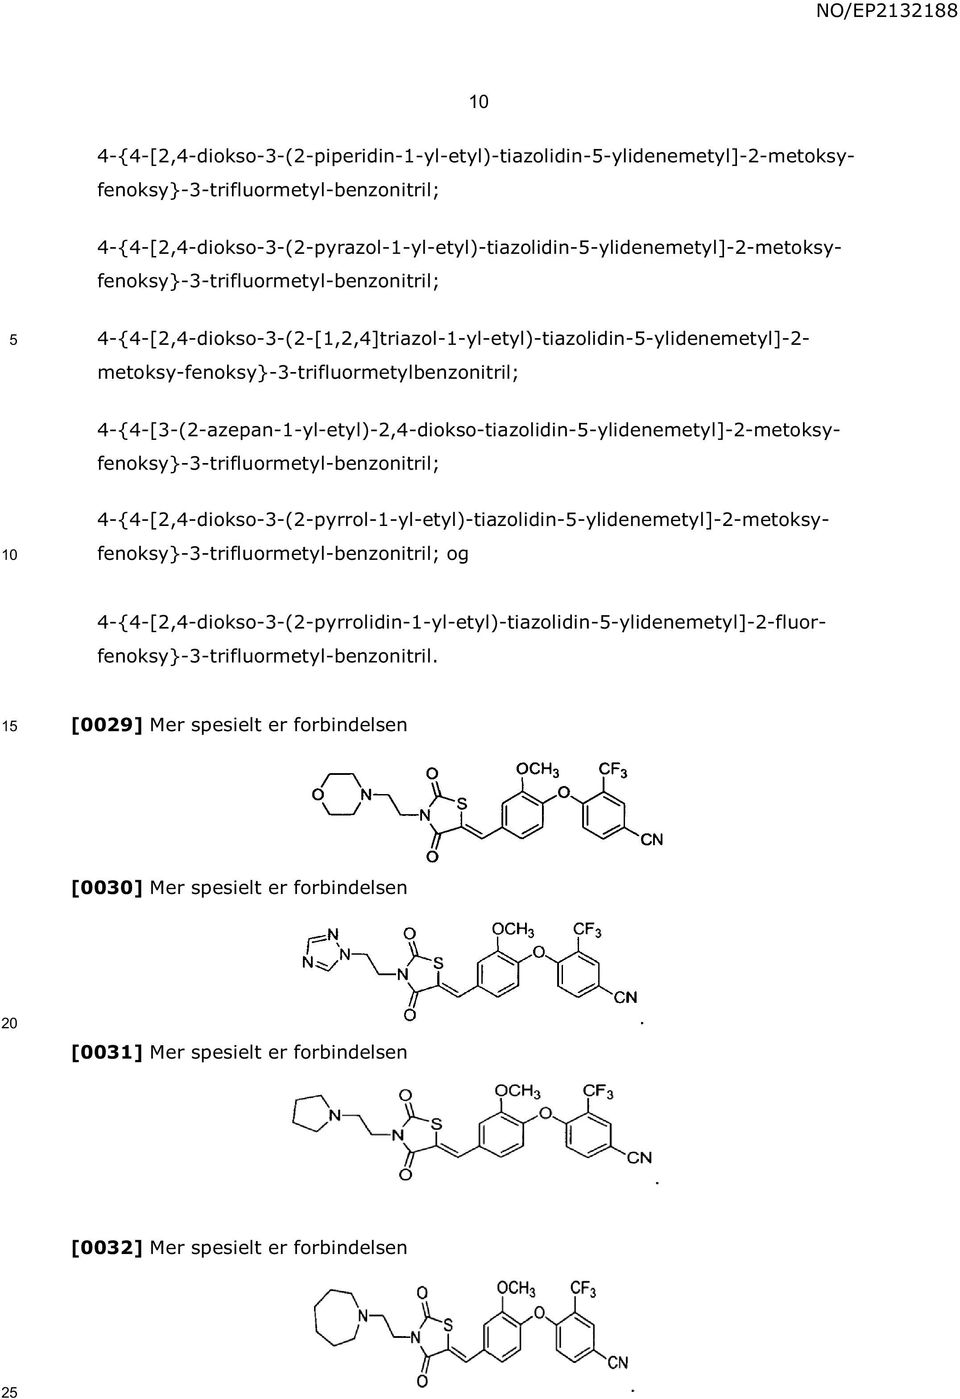 4-{4-[2,4-diokso-3-(2-[1,2,4]triazol-1-yl-etyl)-tiazolidin--ylidenemetyl]-2-4-{4-[3-(2-azepan-1-yl-etyl)-2,4-diokso-tiazolidin--ylidenemetyl]-2-metoksyfenoksy}-3-trifluormetyl-benzonitril;